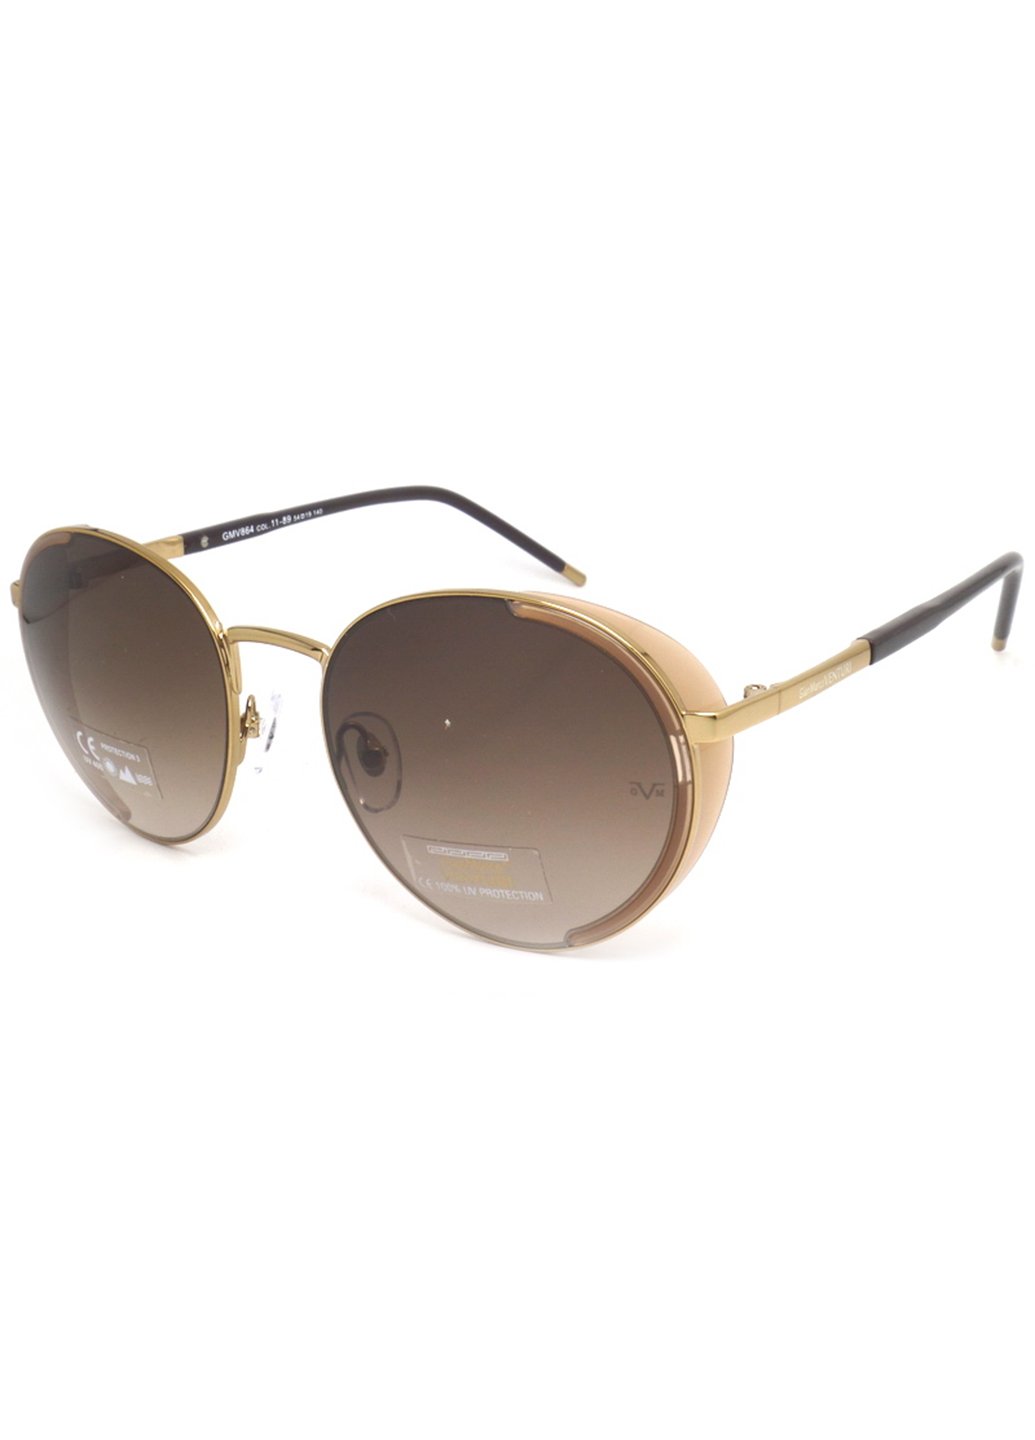 Купить Женские солнцезащитные очки Gian Marco VENTURI GMV864 130020 - Коричневый в интернет-магазине